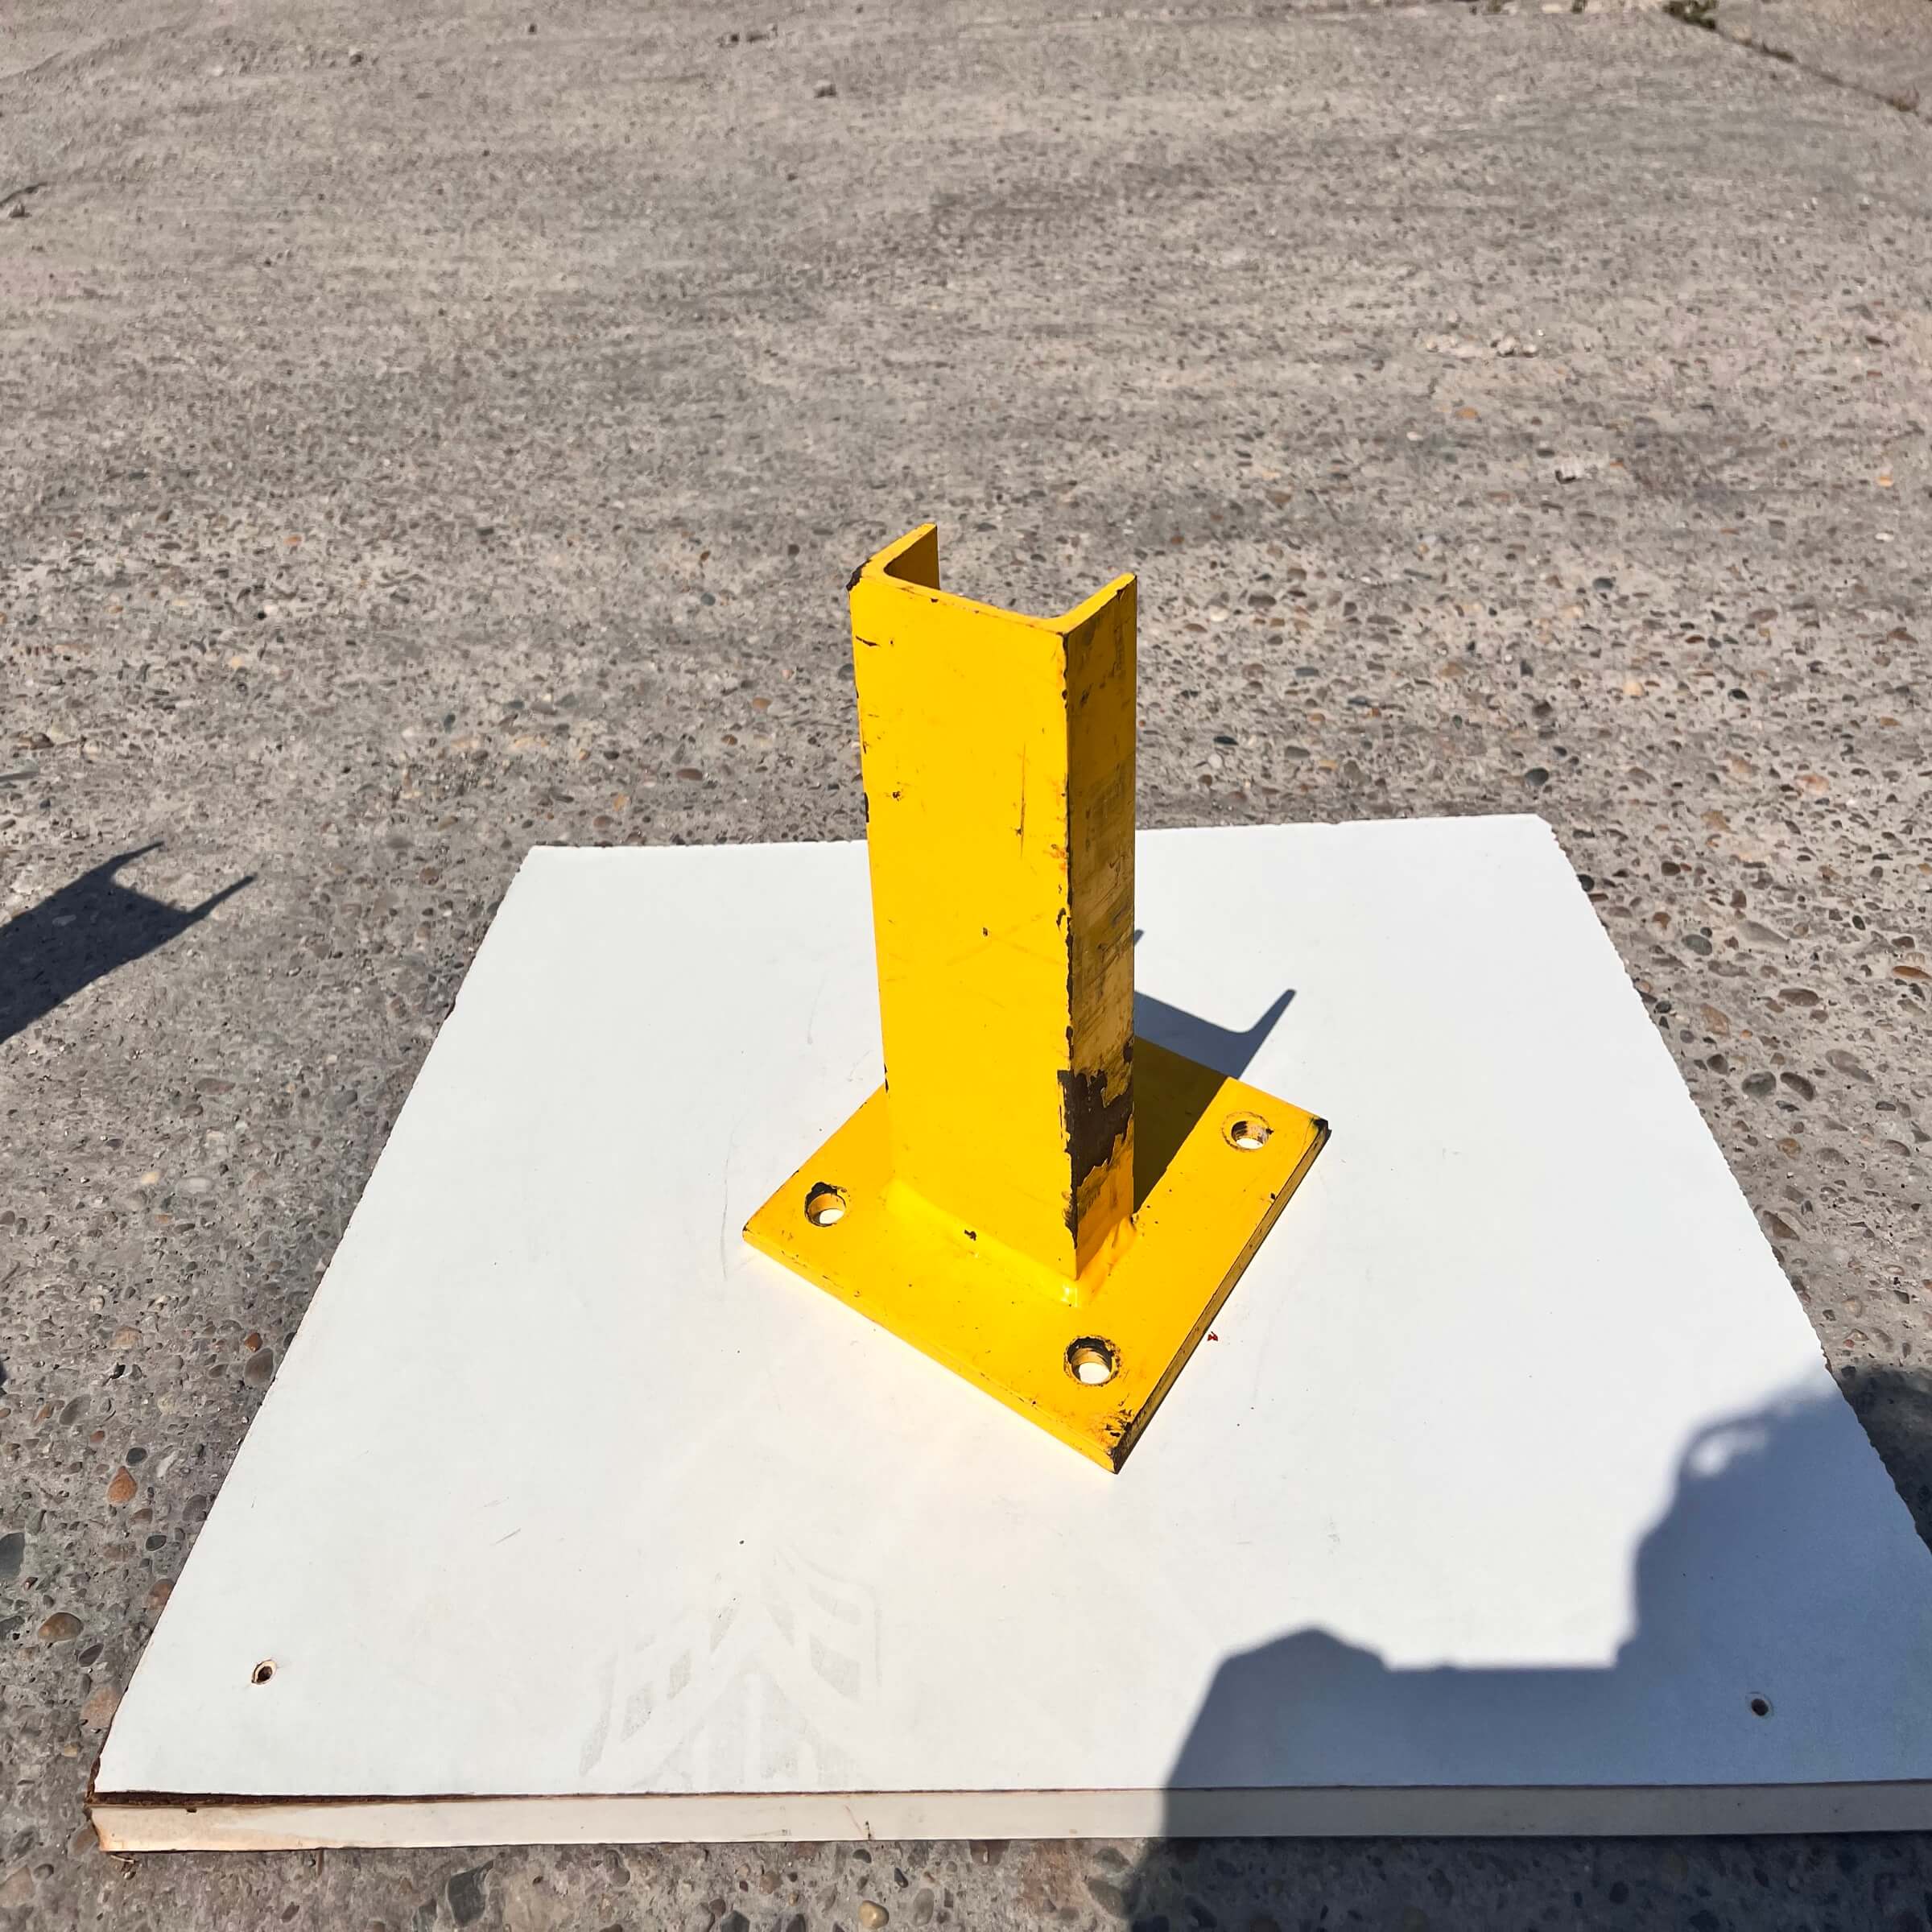 Yellow U-shaped post